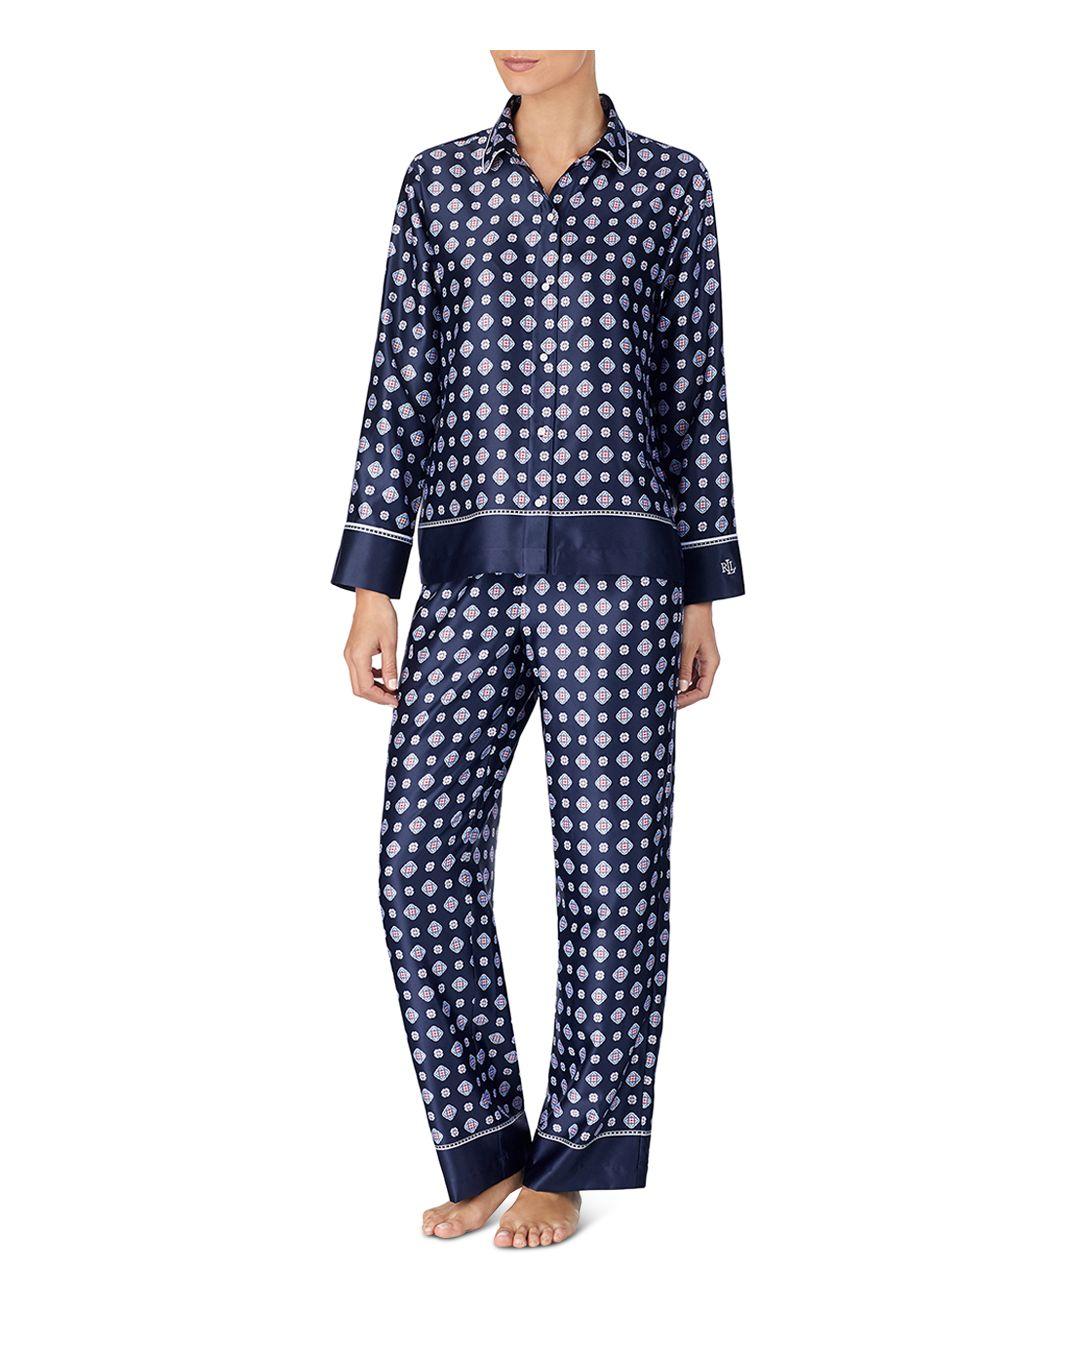 Lauren by Ralph Lauren Satin Rounded Collar Pajama Set in Blue Print ...